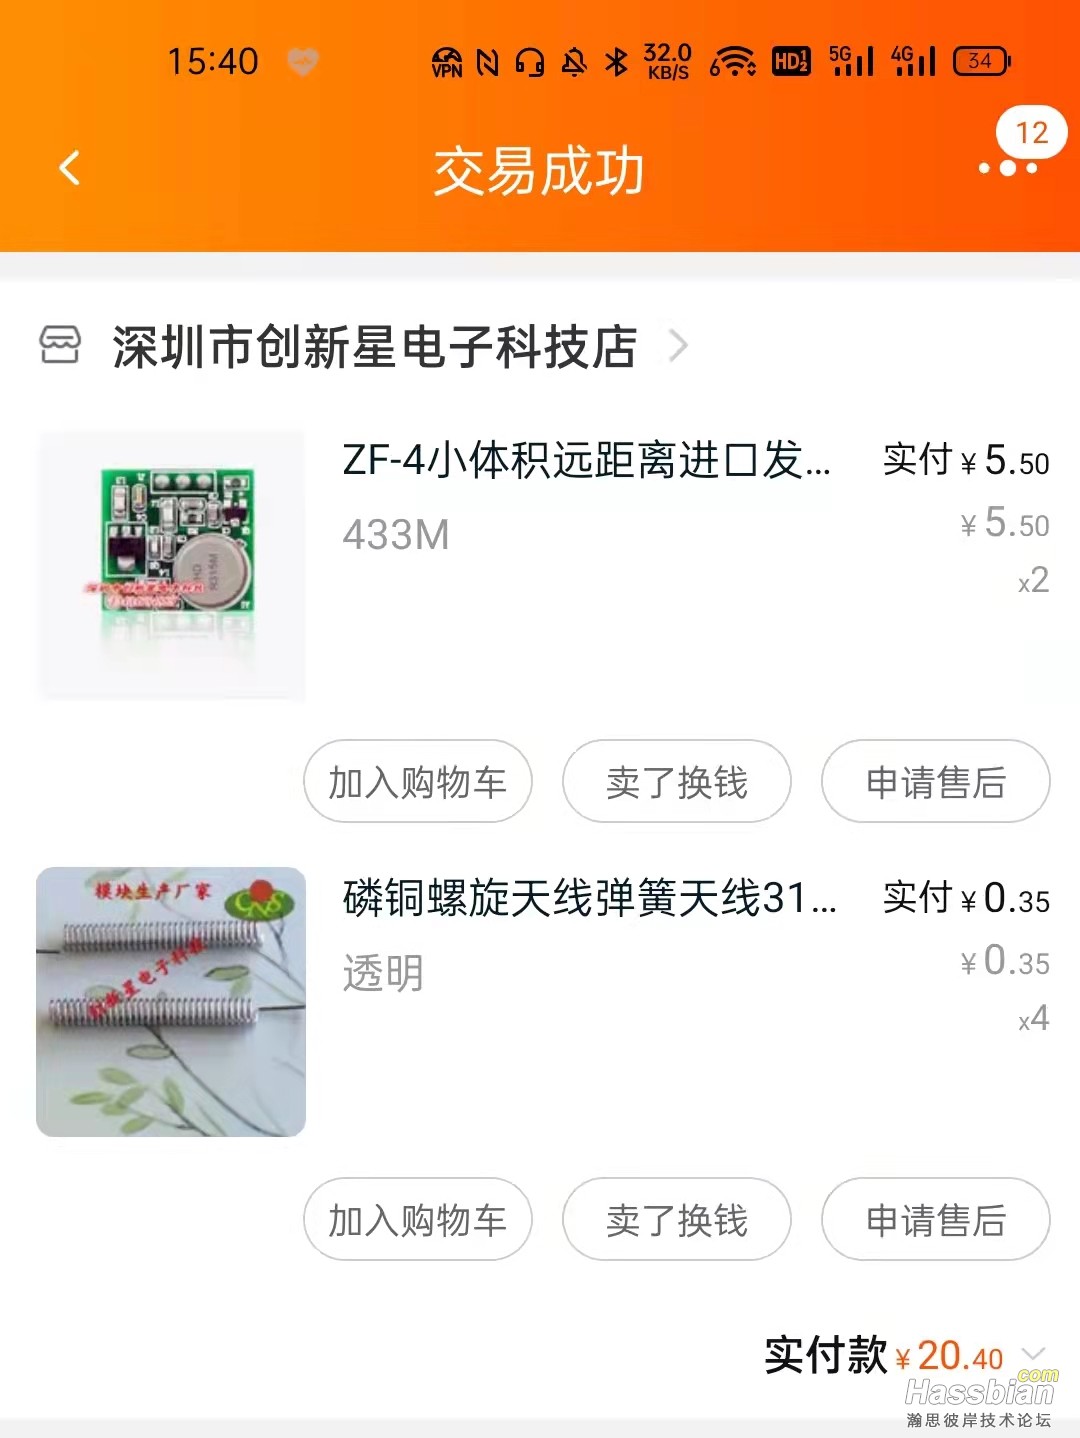 WeChat Image_20211118155438.jpg